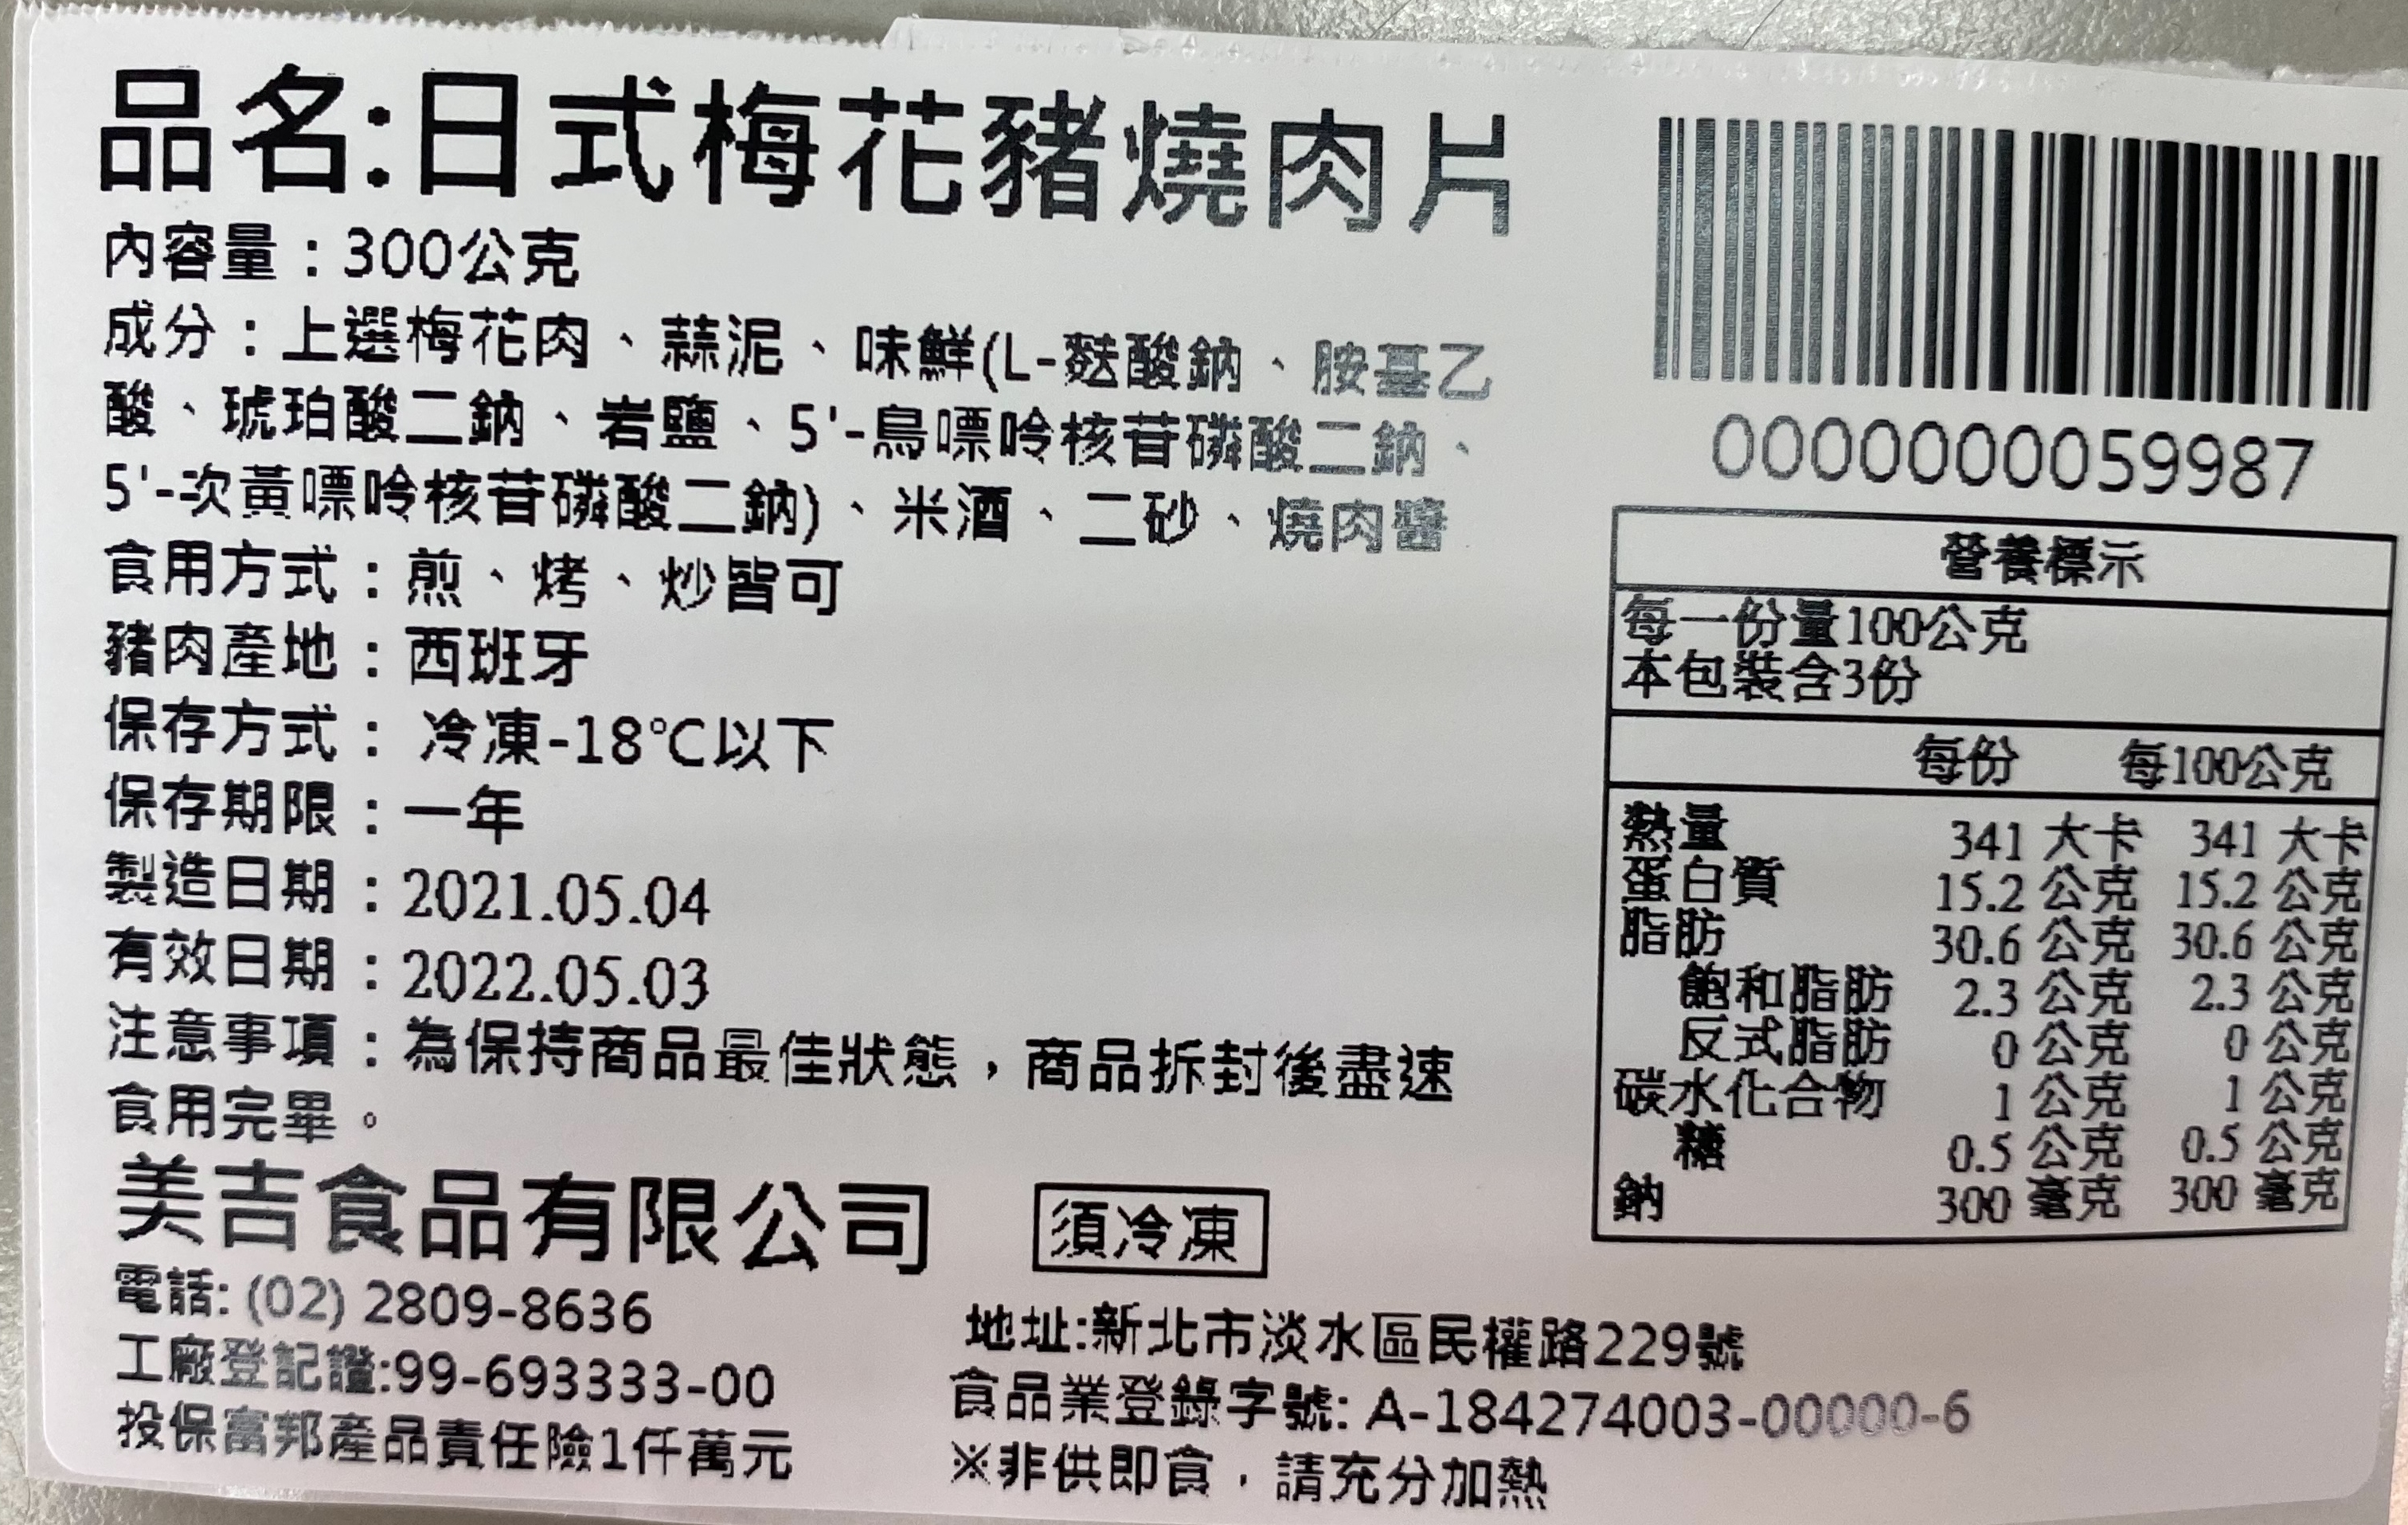 【快樂大廚】日式一級棒梅花燒肉20包組(300g/包)